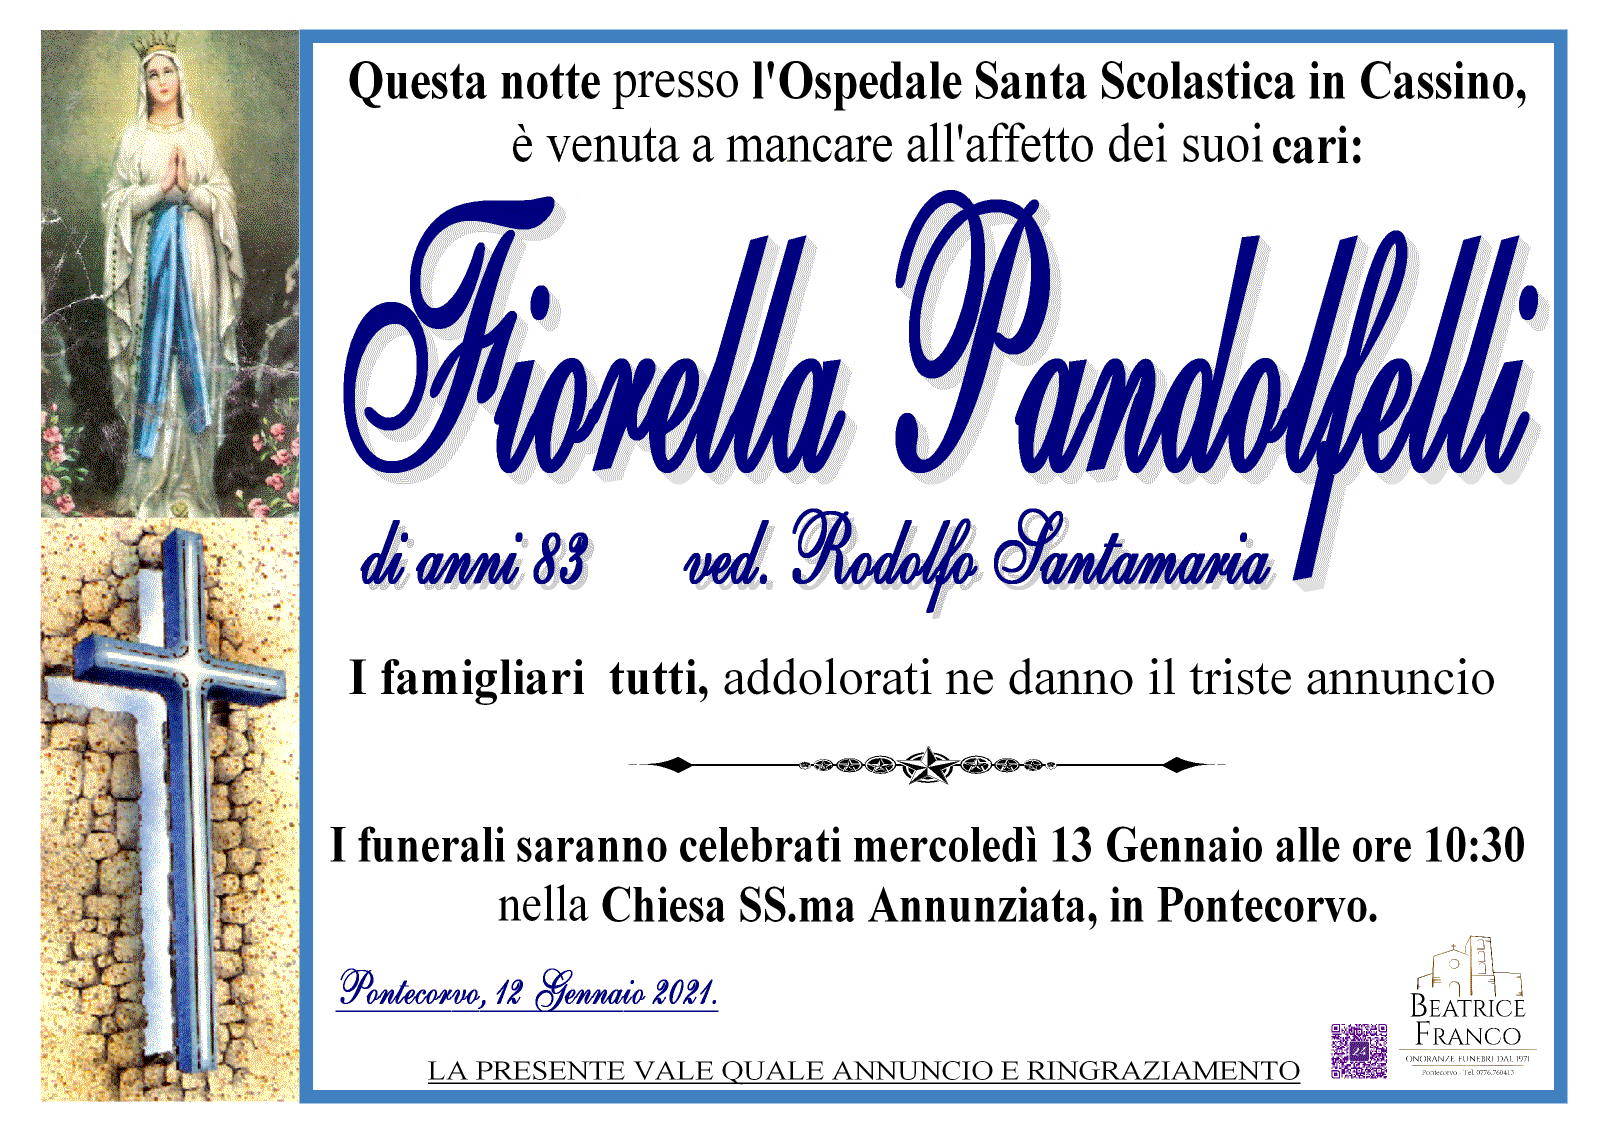 Fiorella Pandolfelli